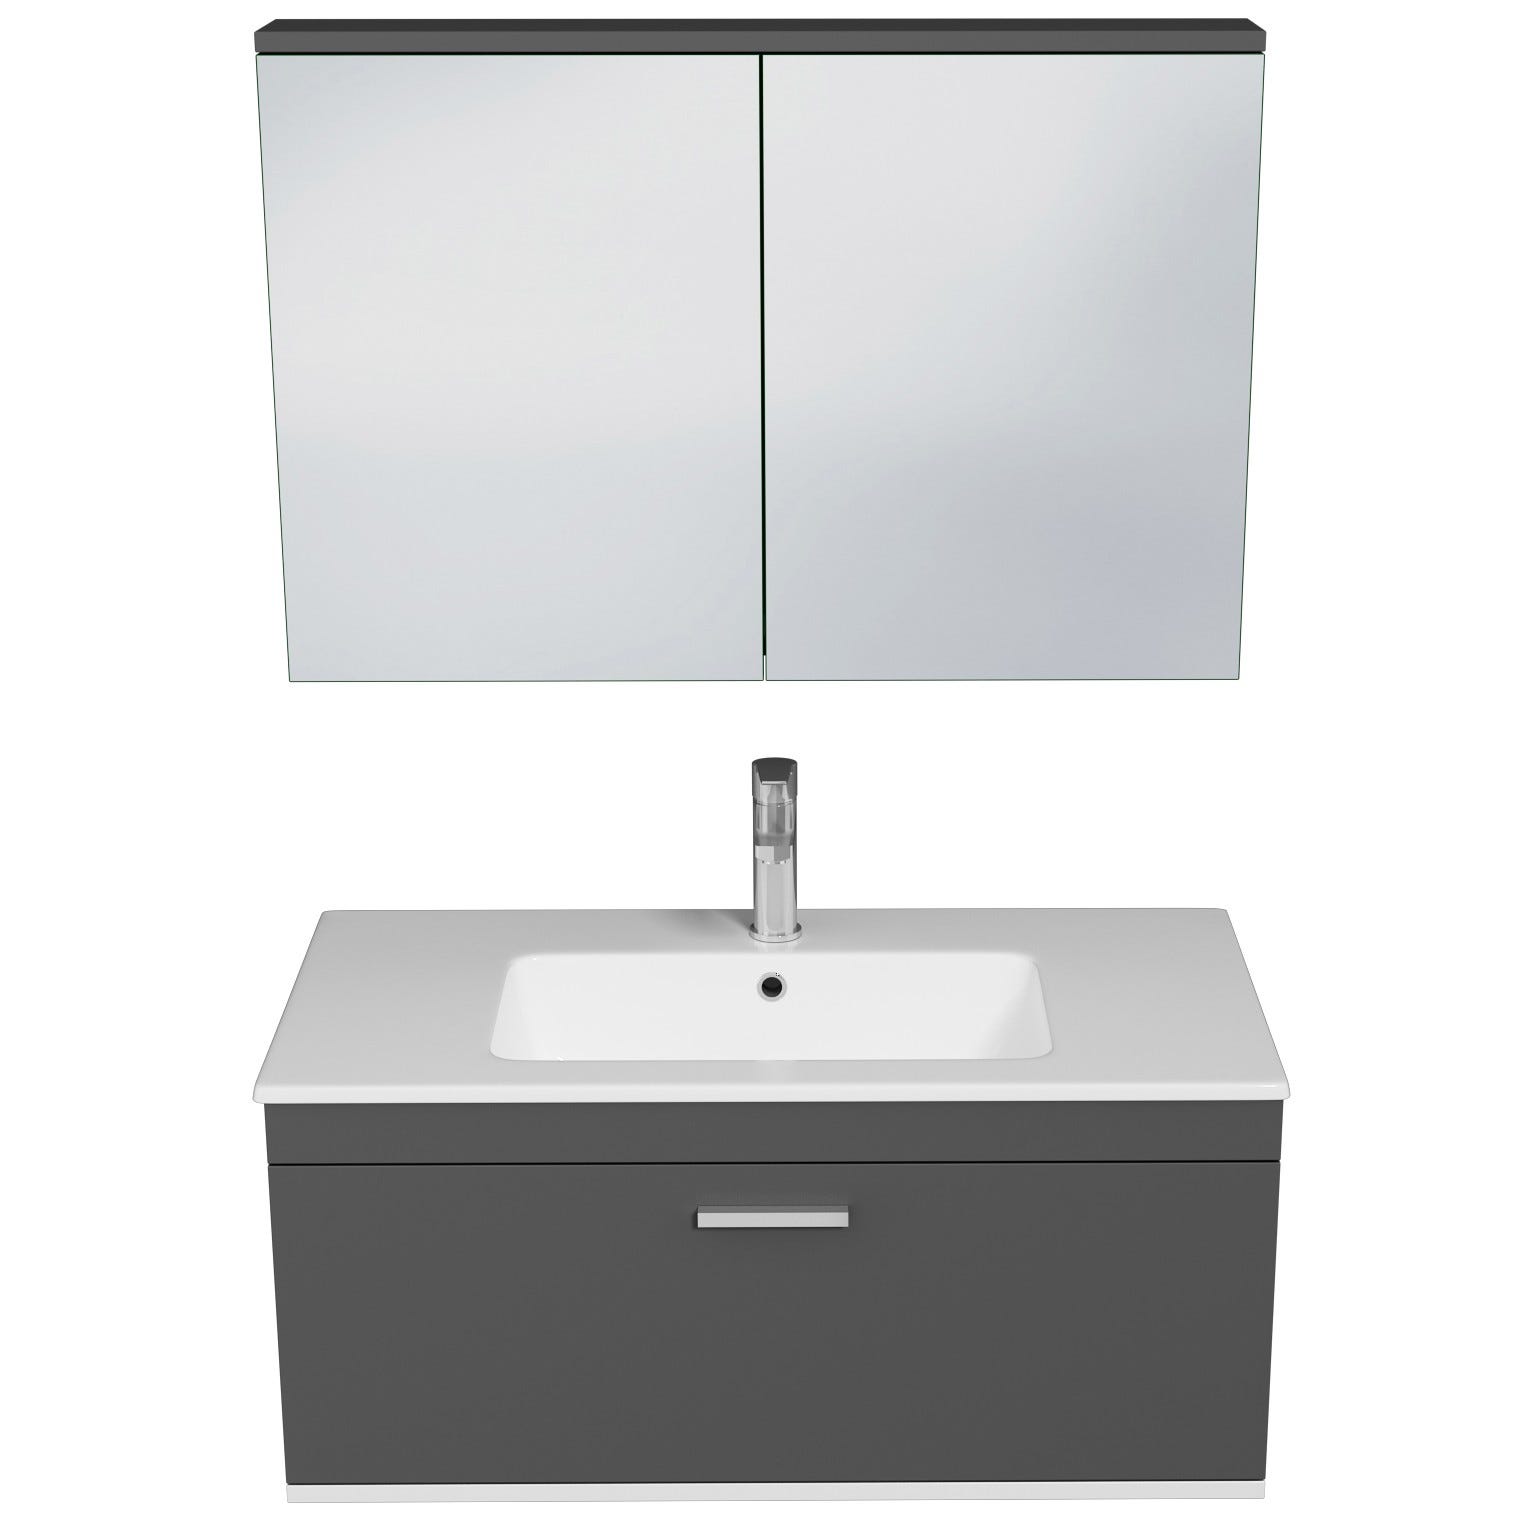 RUBITE Meuble salle de bain simple vasque 1 tiroir gris anthracite largeur 90 cm + miroir armoire 3